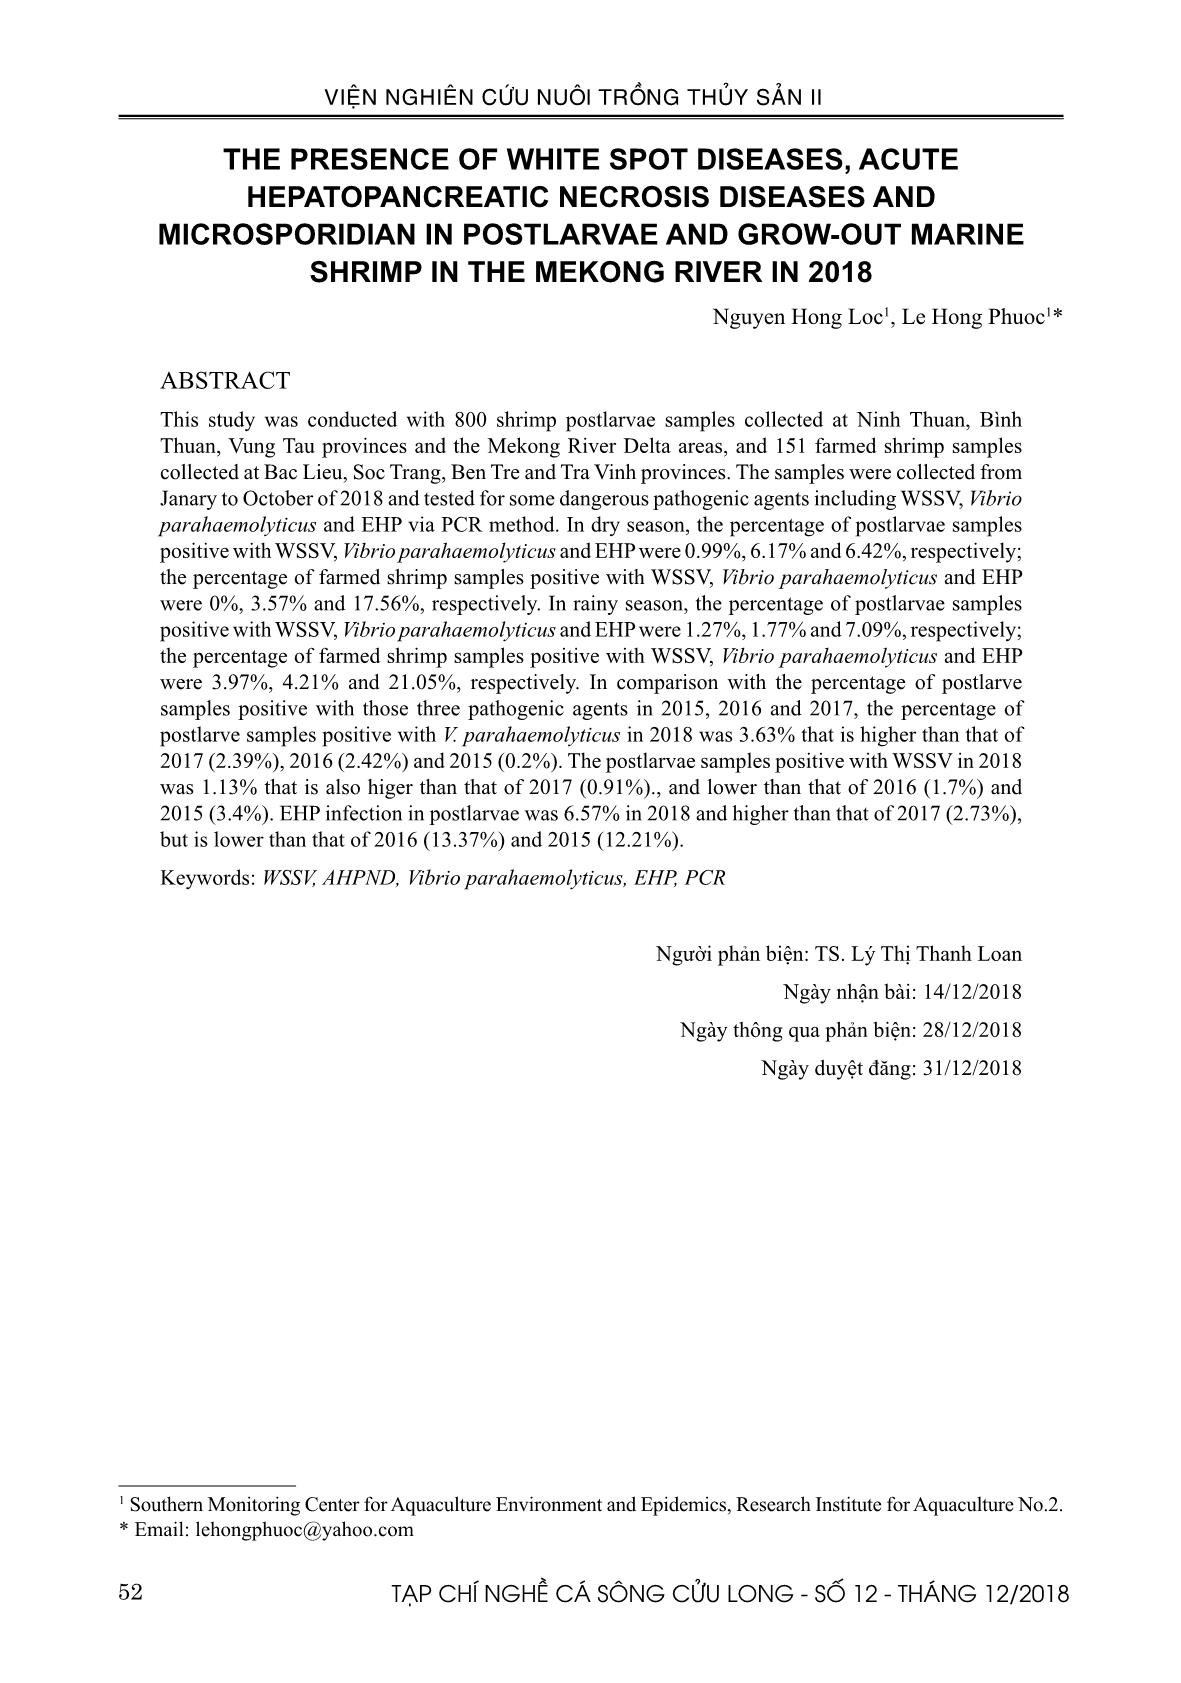 Sự hiện hiện của các bệnh đốm trắng, hoại tử gan tụy cấp và vi bào tử trùng trên tôm giống và tôm nuôi nước lợ ở đồng bằng sông Cửu Long năm 2018 trang 9